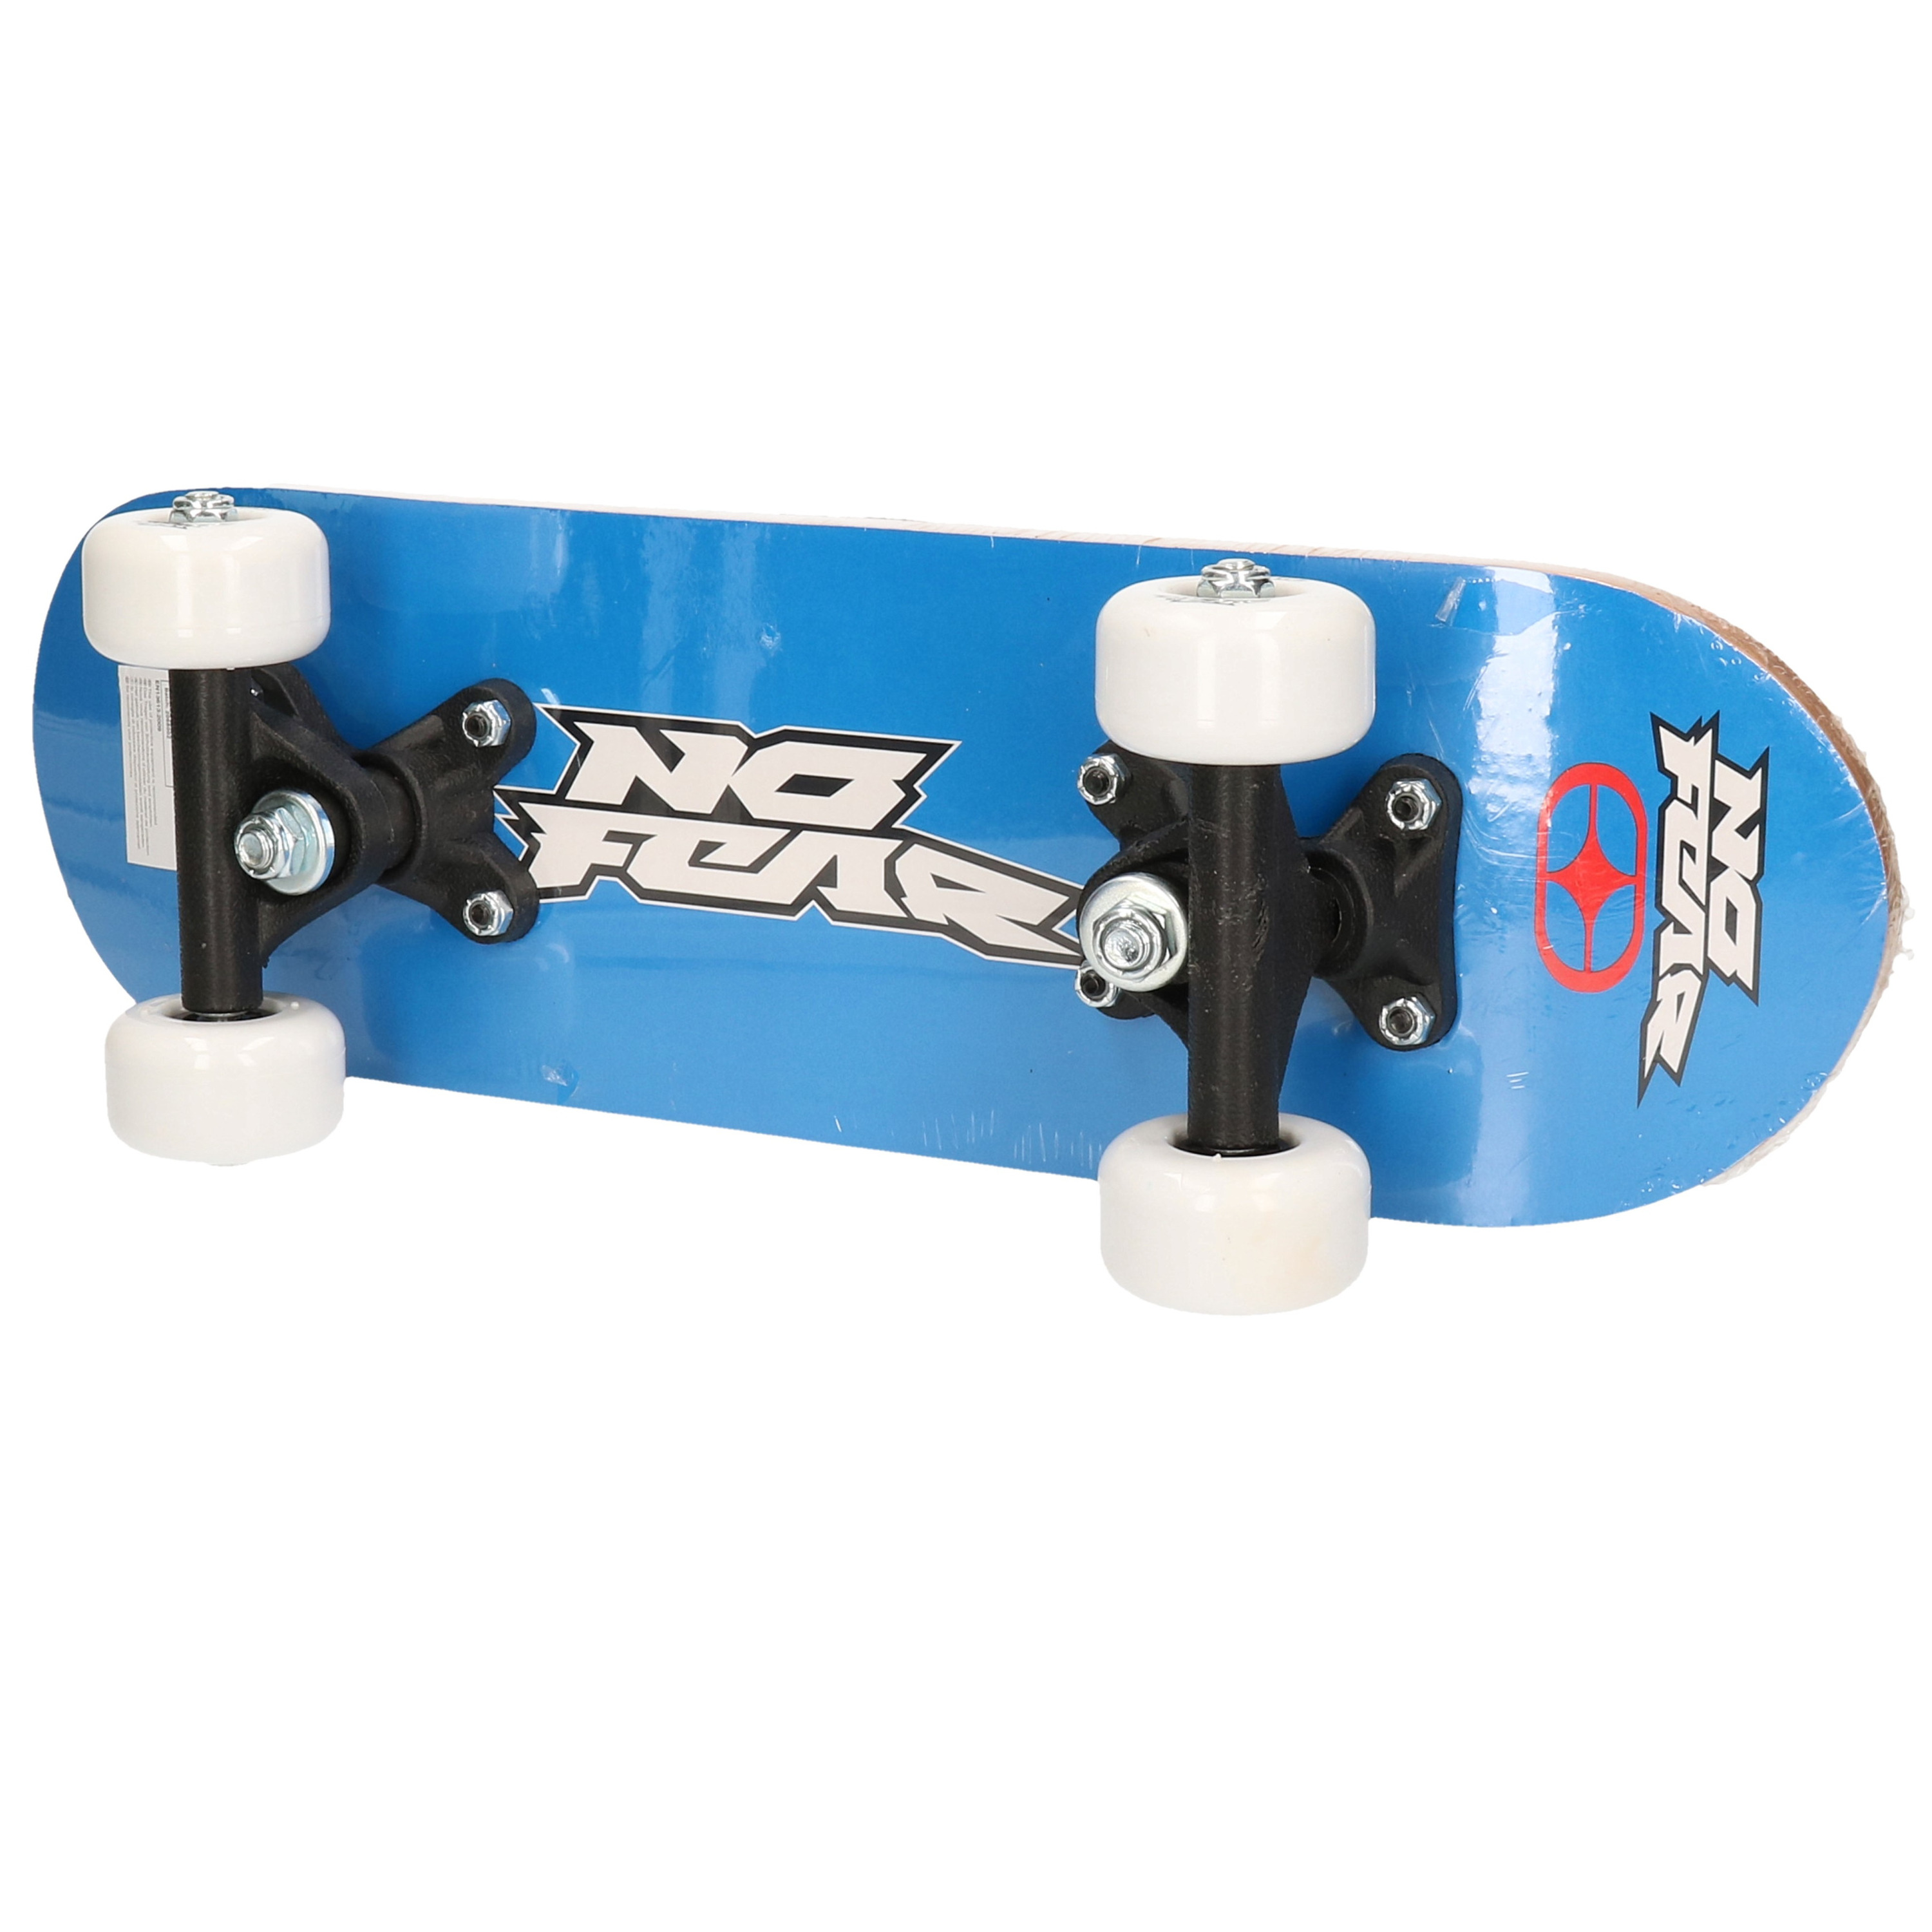 Skate board voor kinderen 43 cm